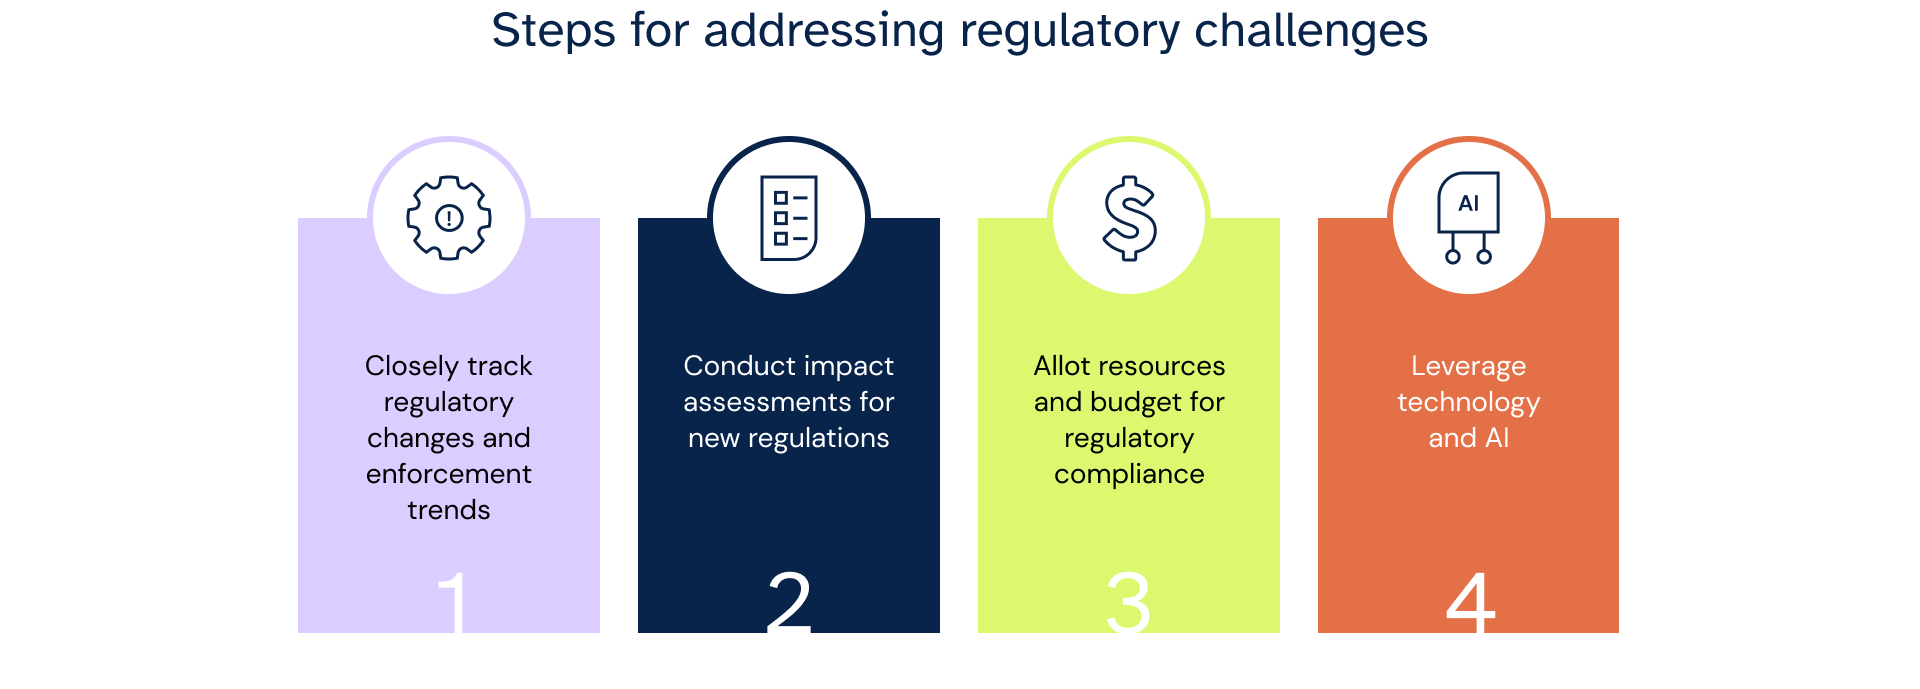 Steps for addressing regulatory challenges